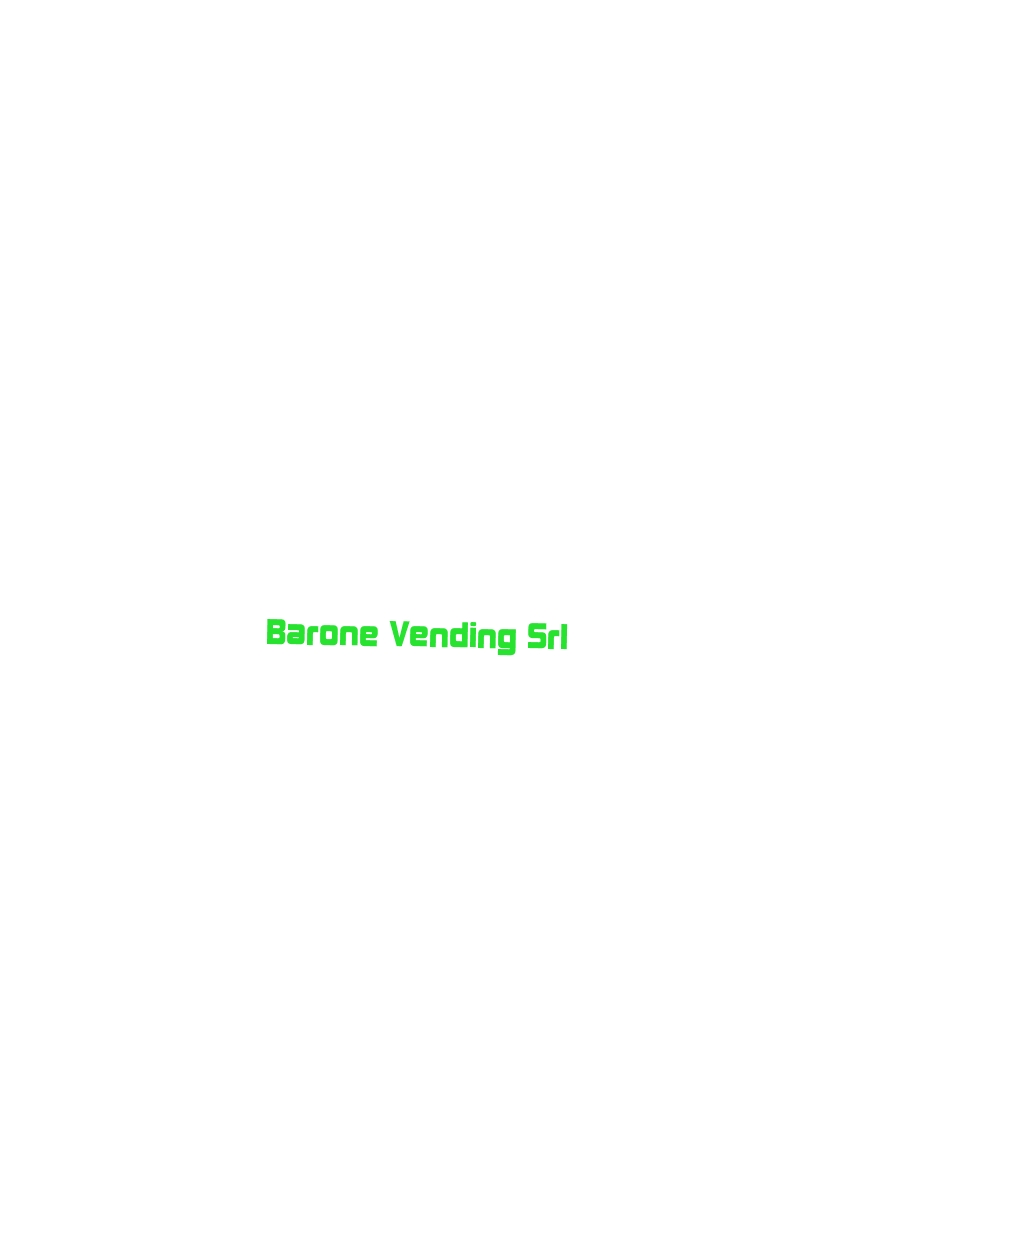 logo Barone Vending Srl